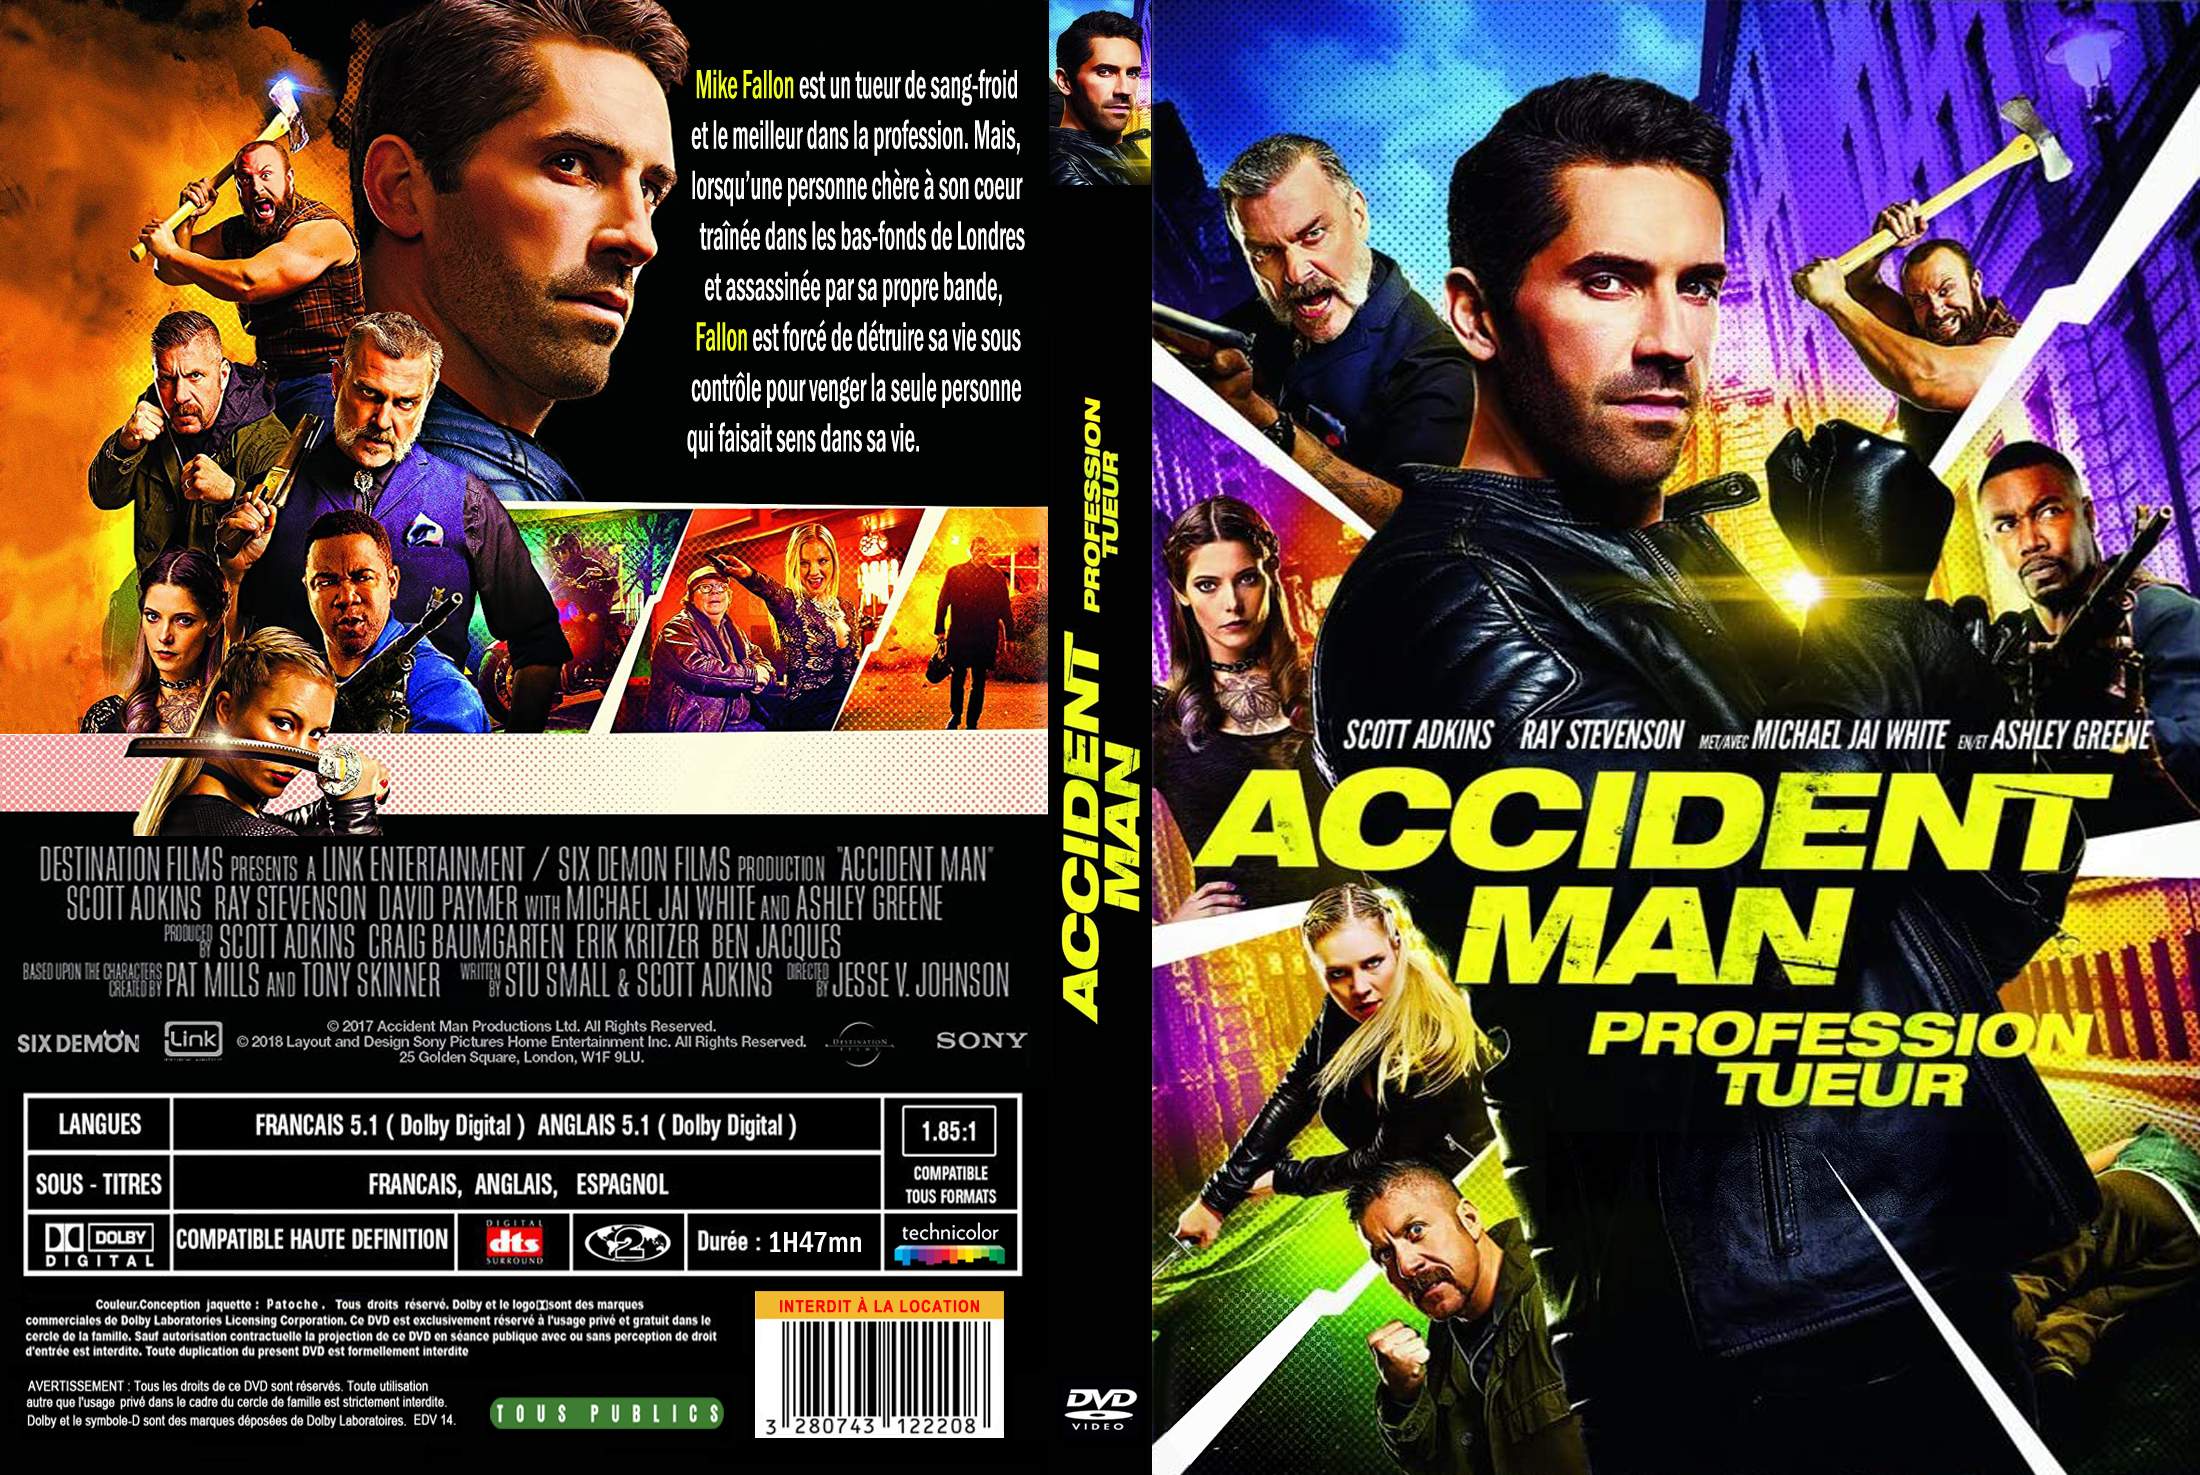 Jaquette DVD de Accident man custom - Cinéma Passion